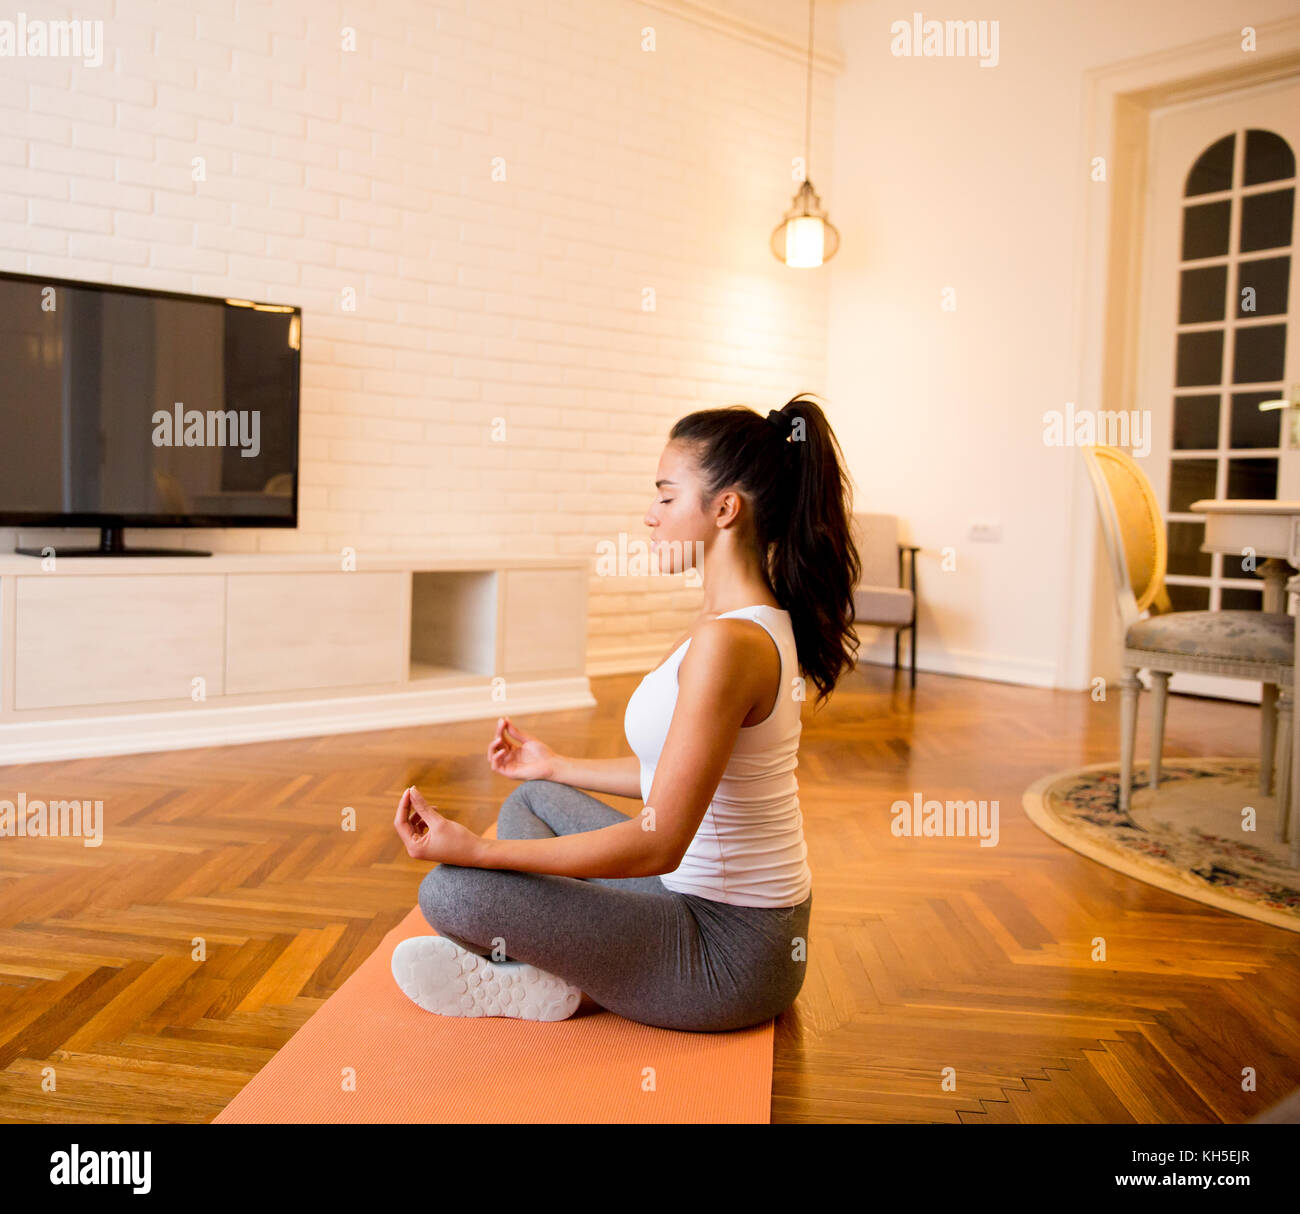 Mujer joven sentada en el piso en su casa haciendo Yoga Meditación Foto de stock